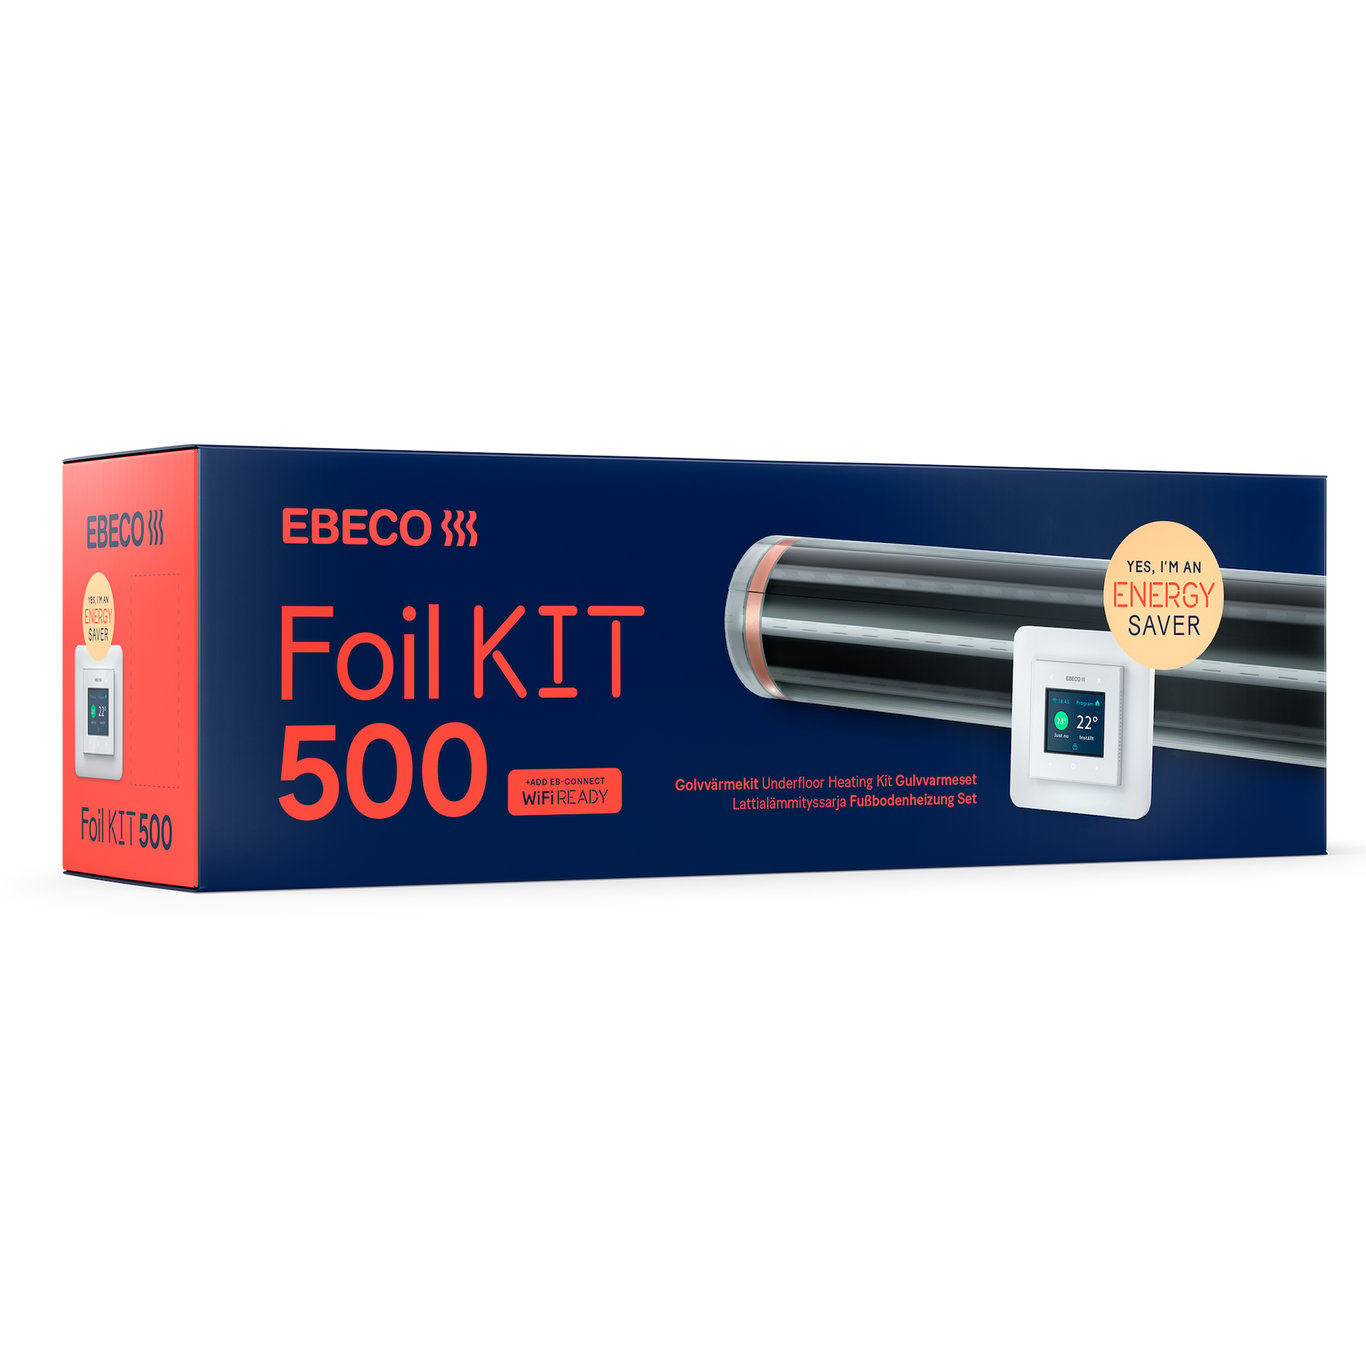 EBECO FOIL KIT 500 10-12 M² 43CM X 27M 65W/M²